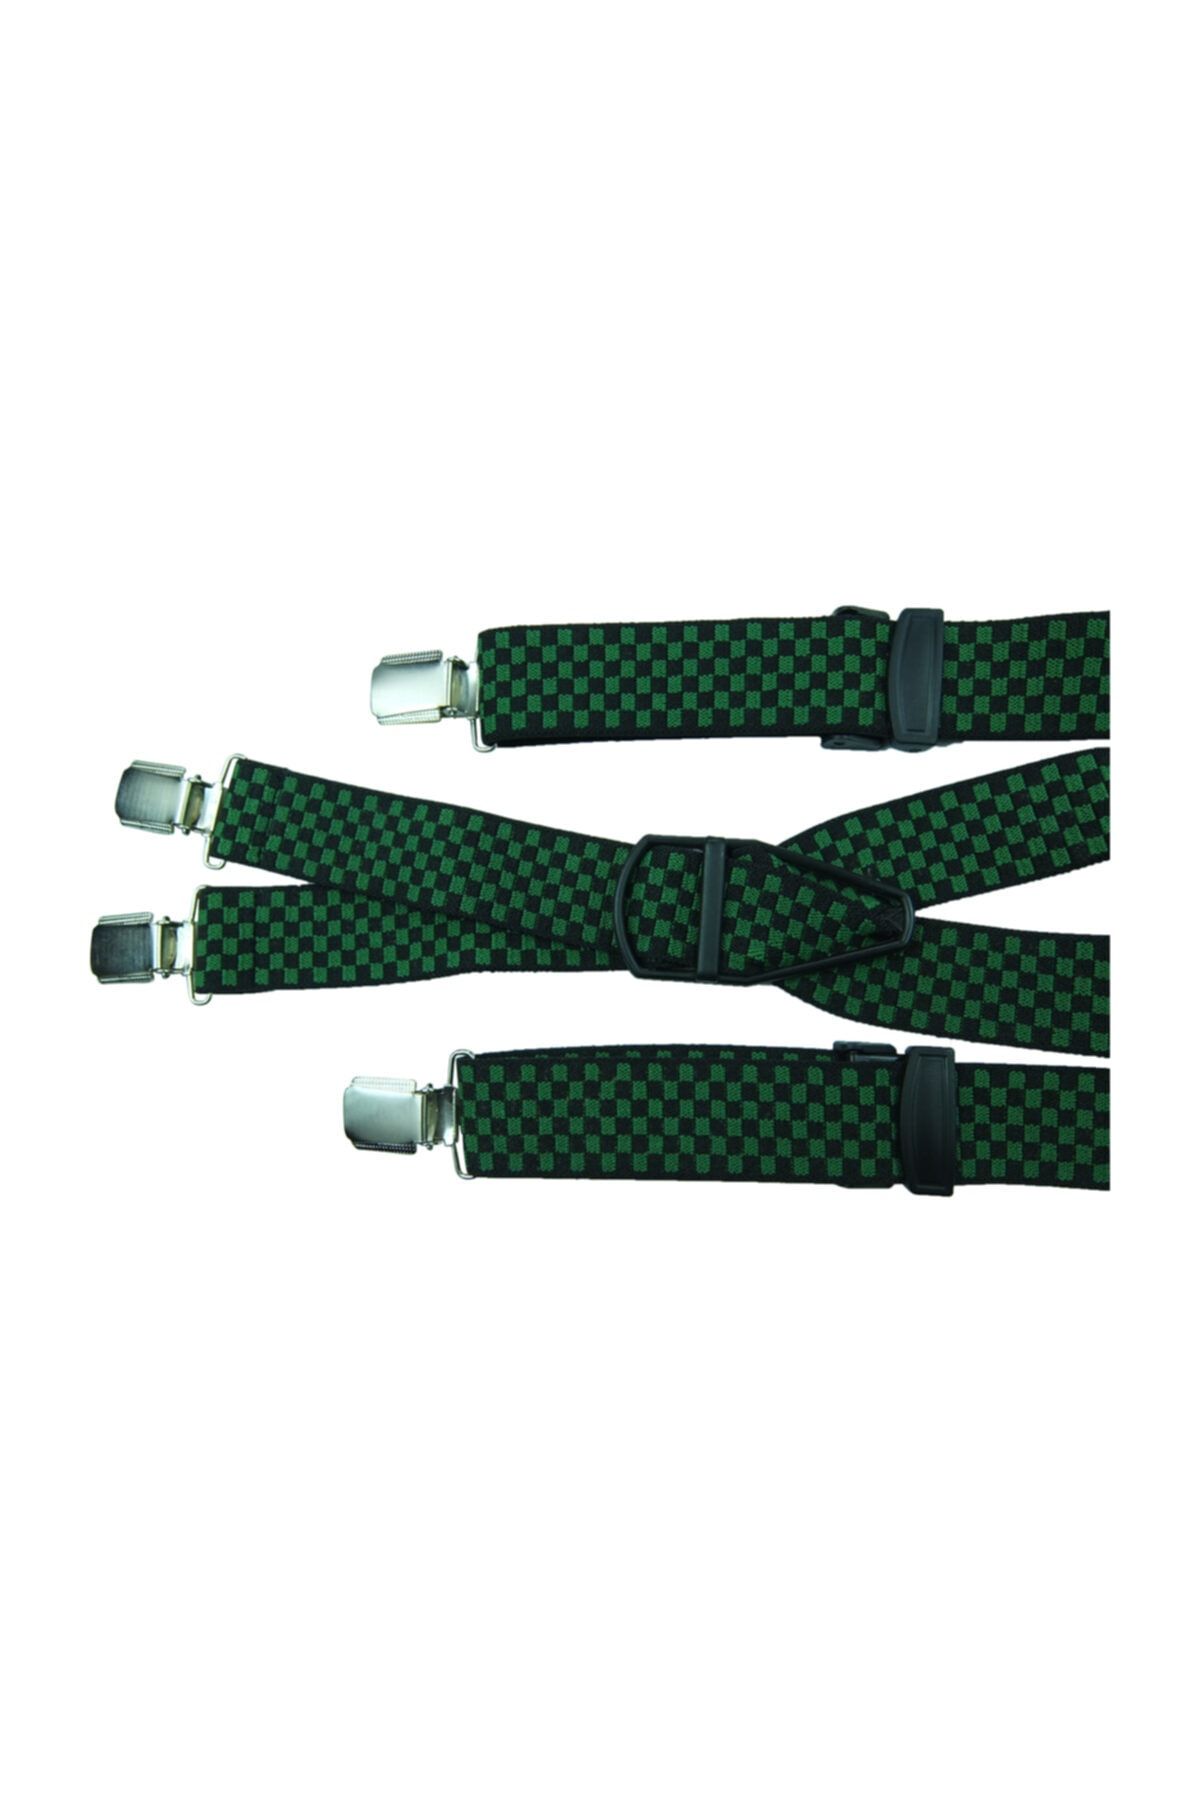 KemerSepeti Yeşil Siyah Kareli 4 Klipsli Pantolon Askısı